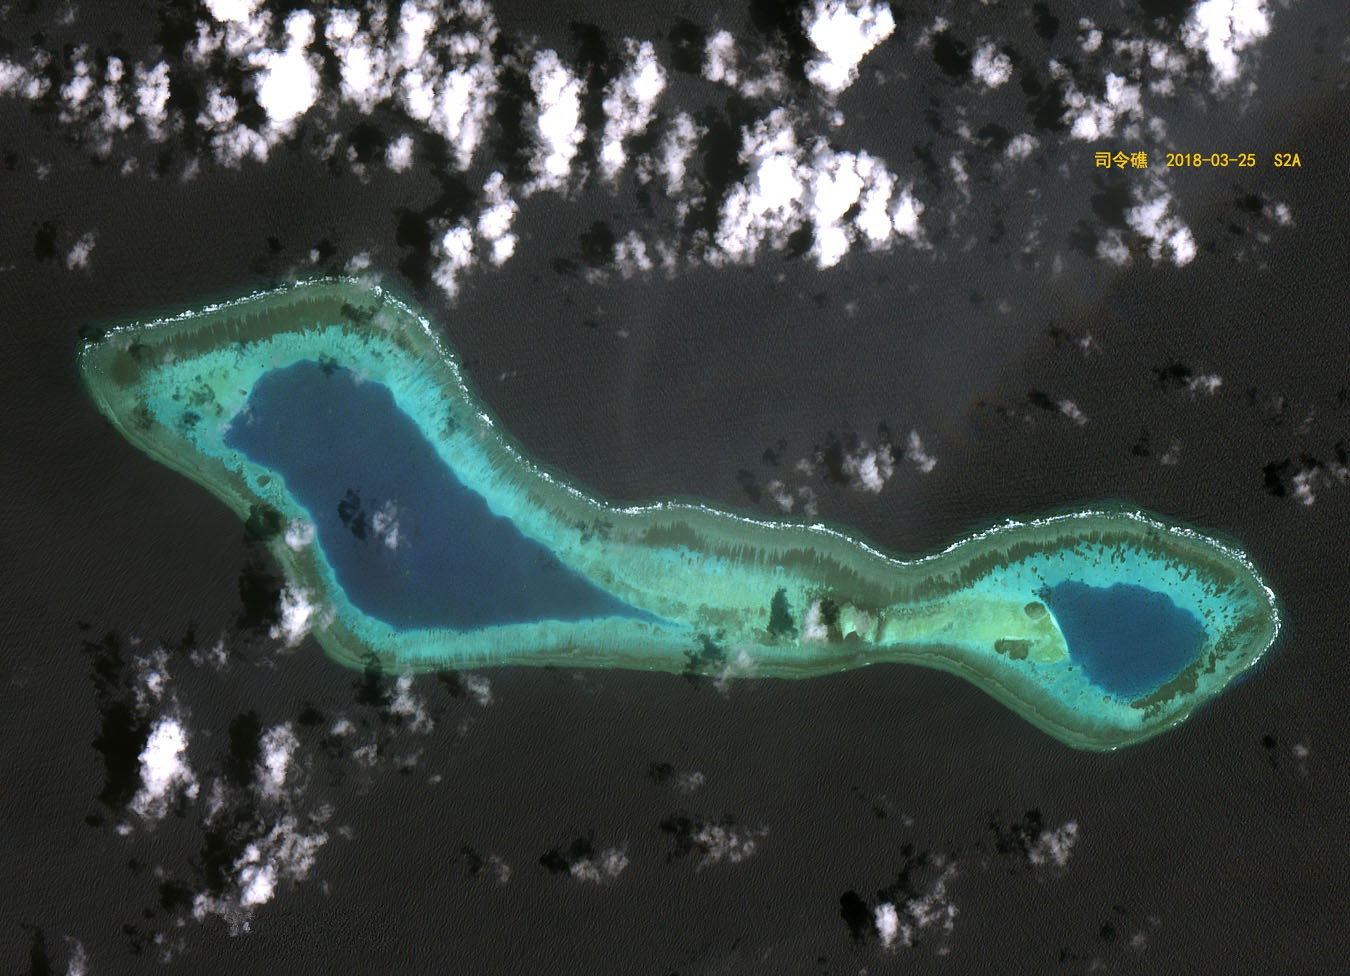 大美南海之司令礁,像一副绚丽太阳镜的岛礁